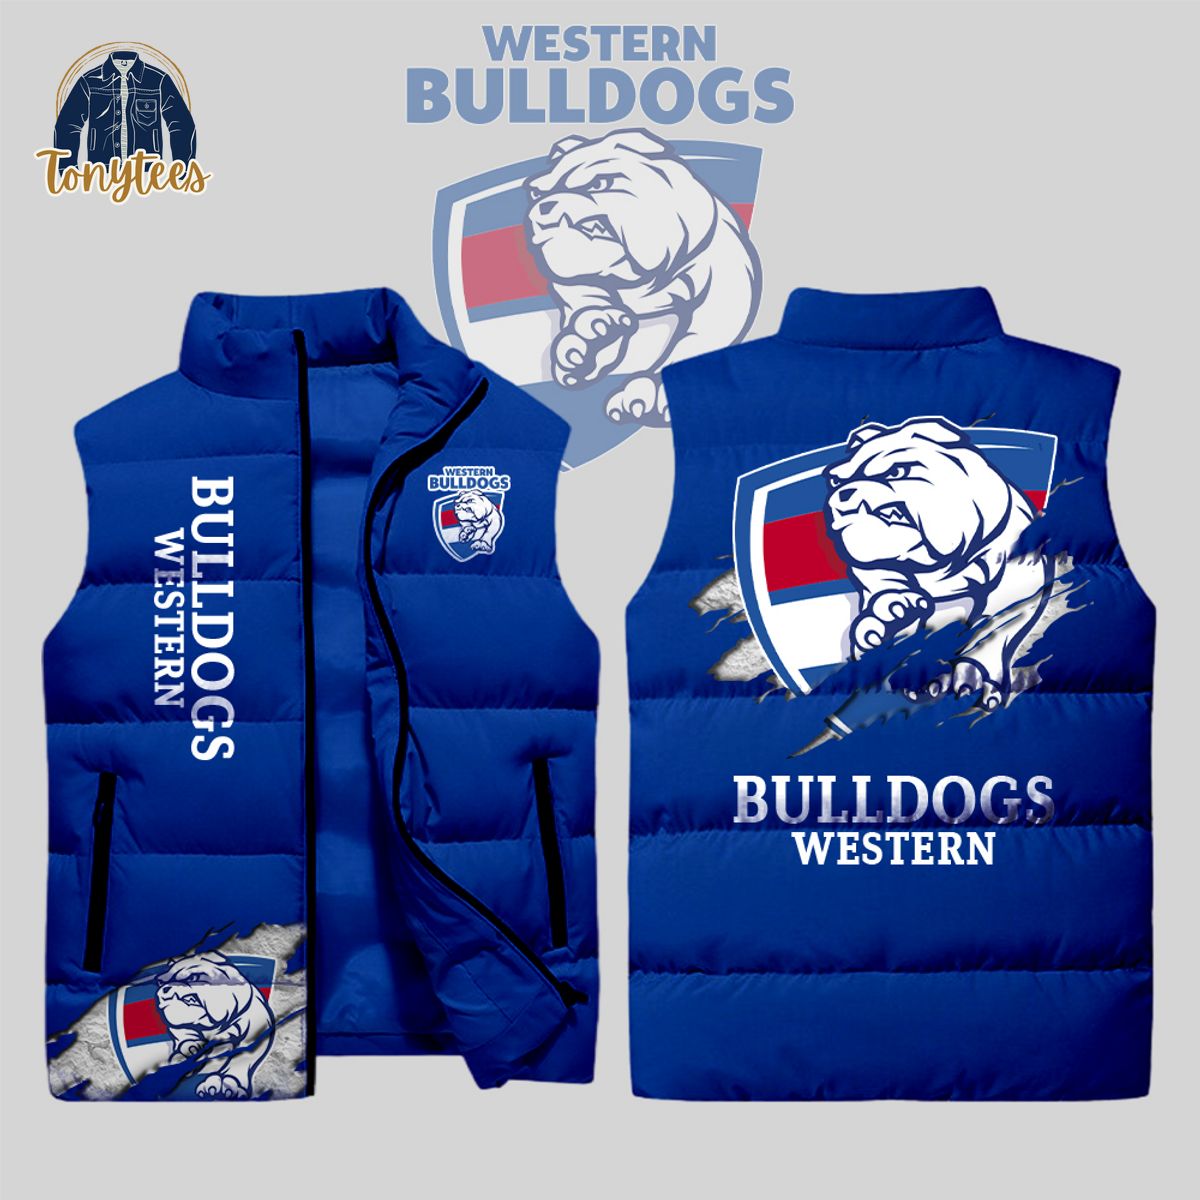 Western Bulldog AFL Sleeveless Jacket